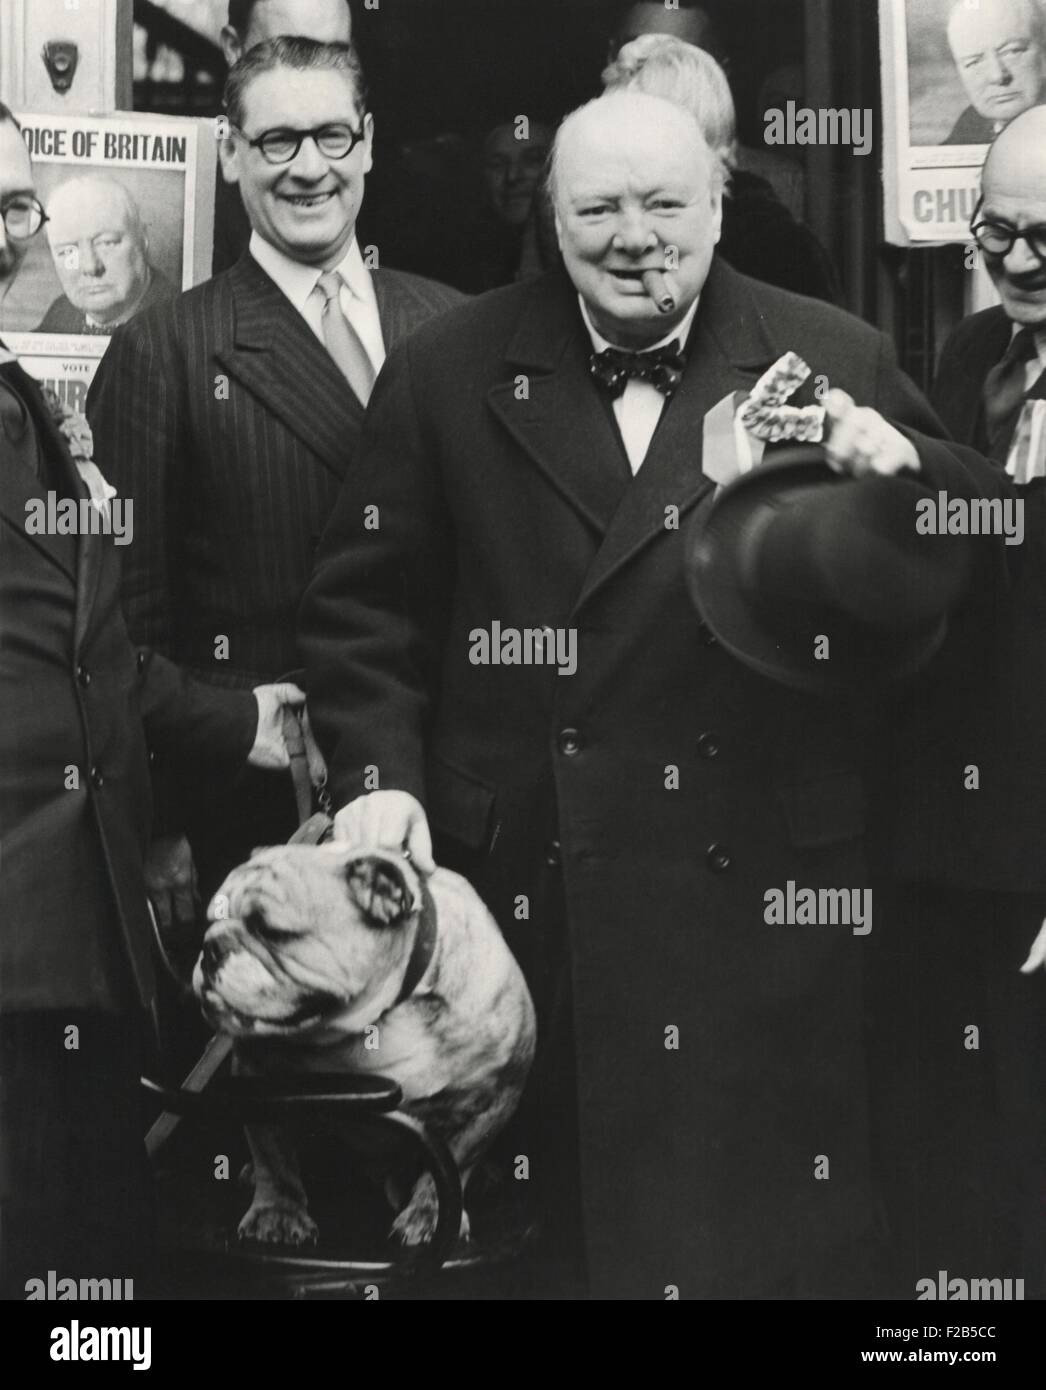 Chef du parti, Winston Churchill prononce un discours à l'extérieur du Club Conservateur, Wanstead, Angleterre. Il pose avec leur mascotte Barley Mow 'bulldog' Jeton lors d'un last minute tour de sa circonscription. 23 février, 1950. - BSLOC__2014 (17_59) Banque D'Images